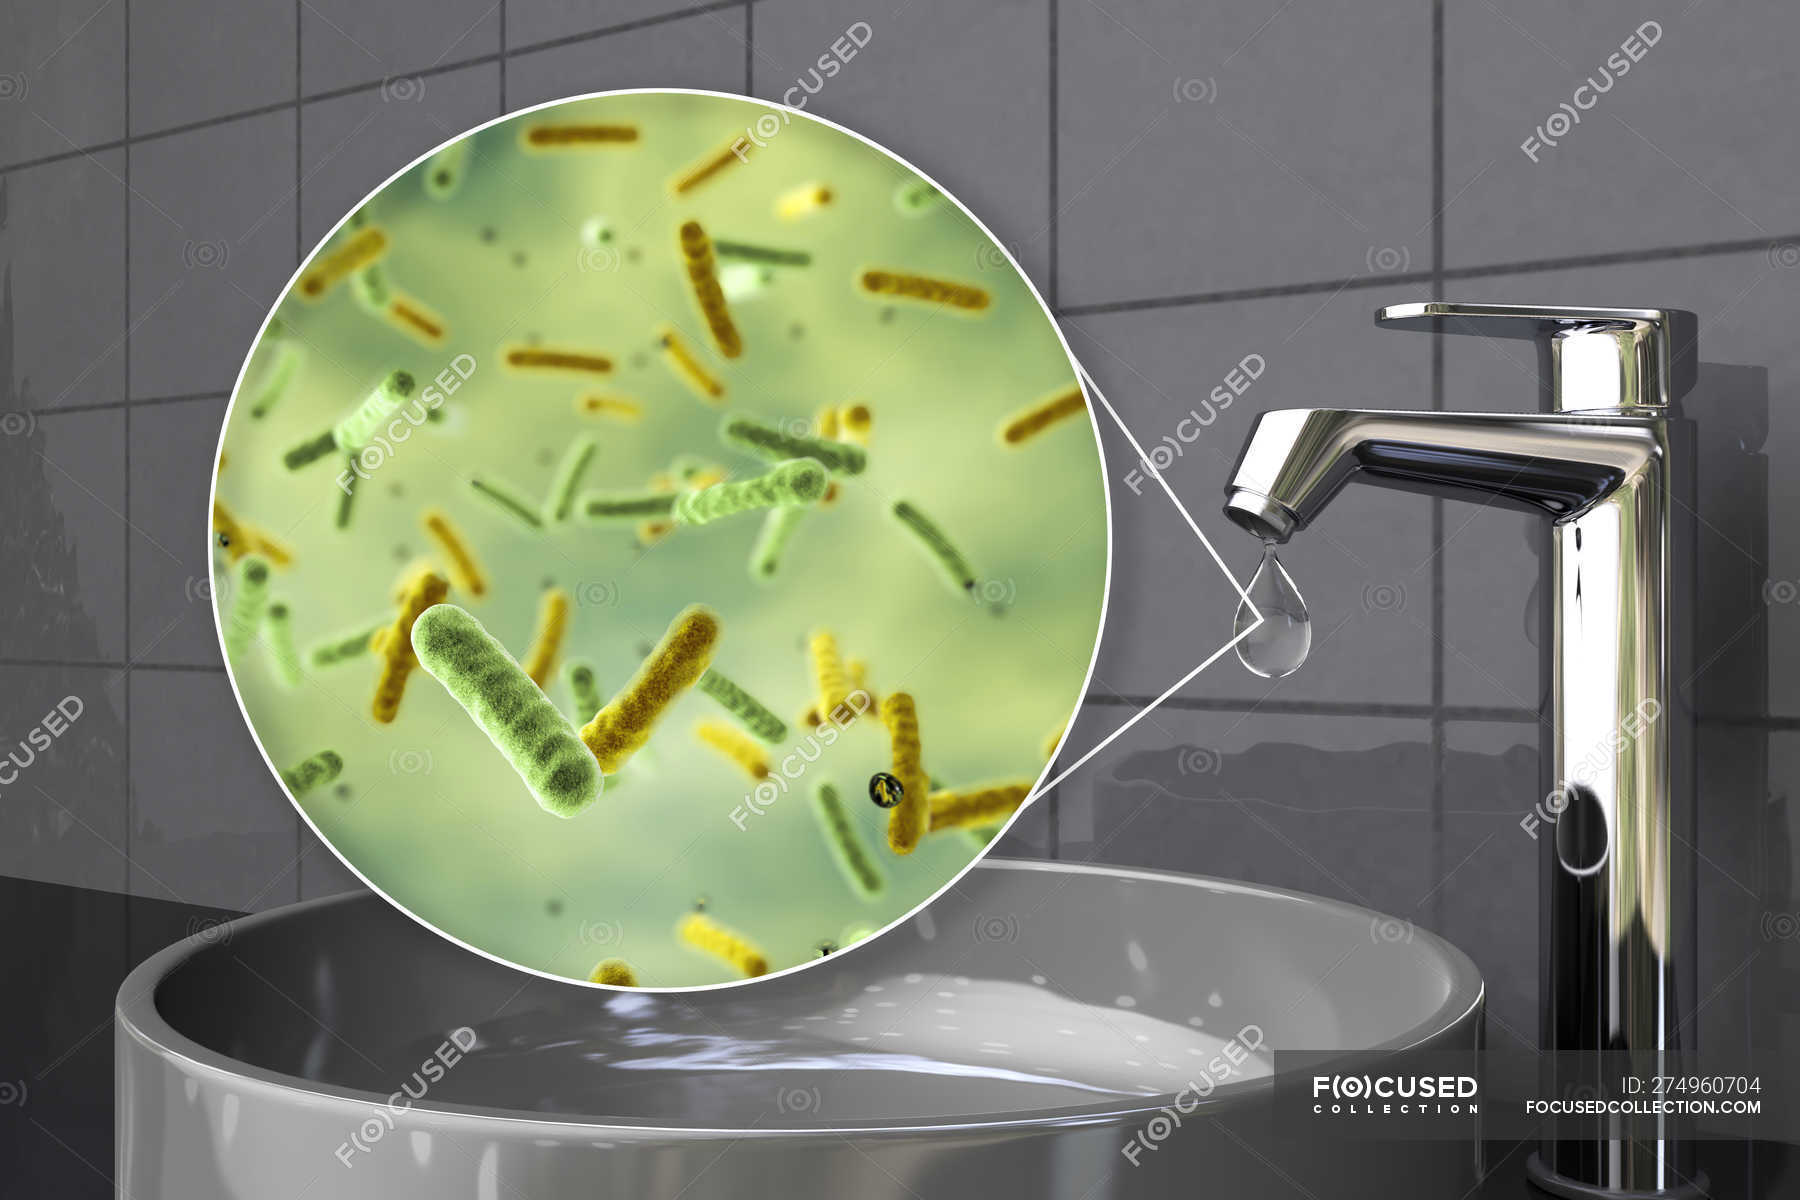 Микроорганизмы питьевой воды. Бактерии в воде из под крана. Микробы в водопроводной воде. Микроорганизмы в воде. Бактерии и микроорганизмы в воде.